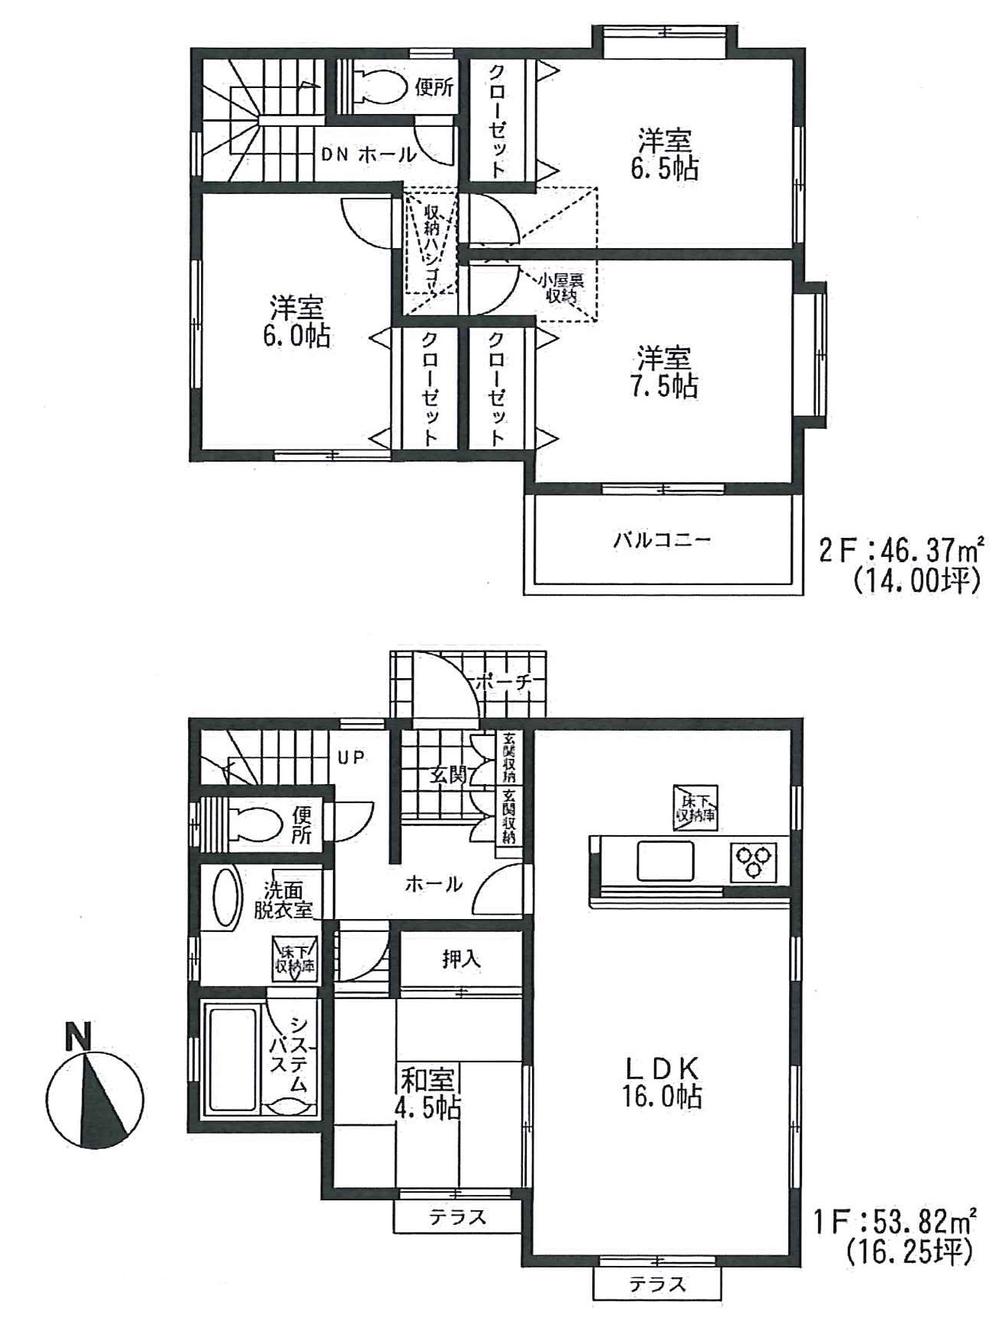 Floor plan. 23.8 million yen, 4LDK, Land area 138.97 sq m , Building area 100.19 sq m